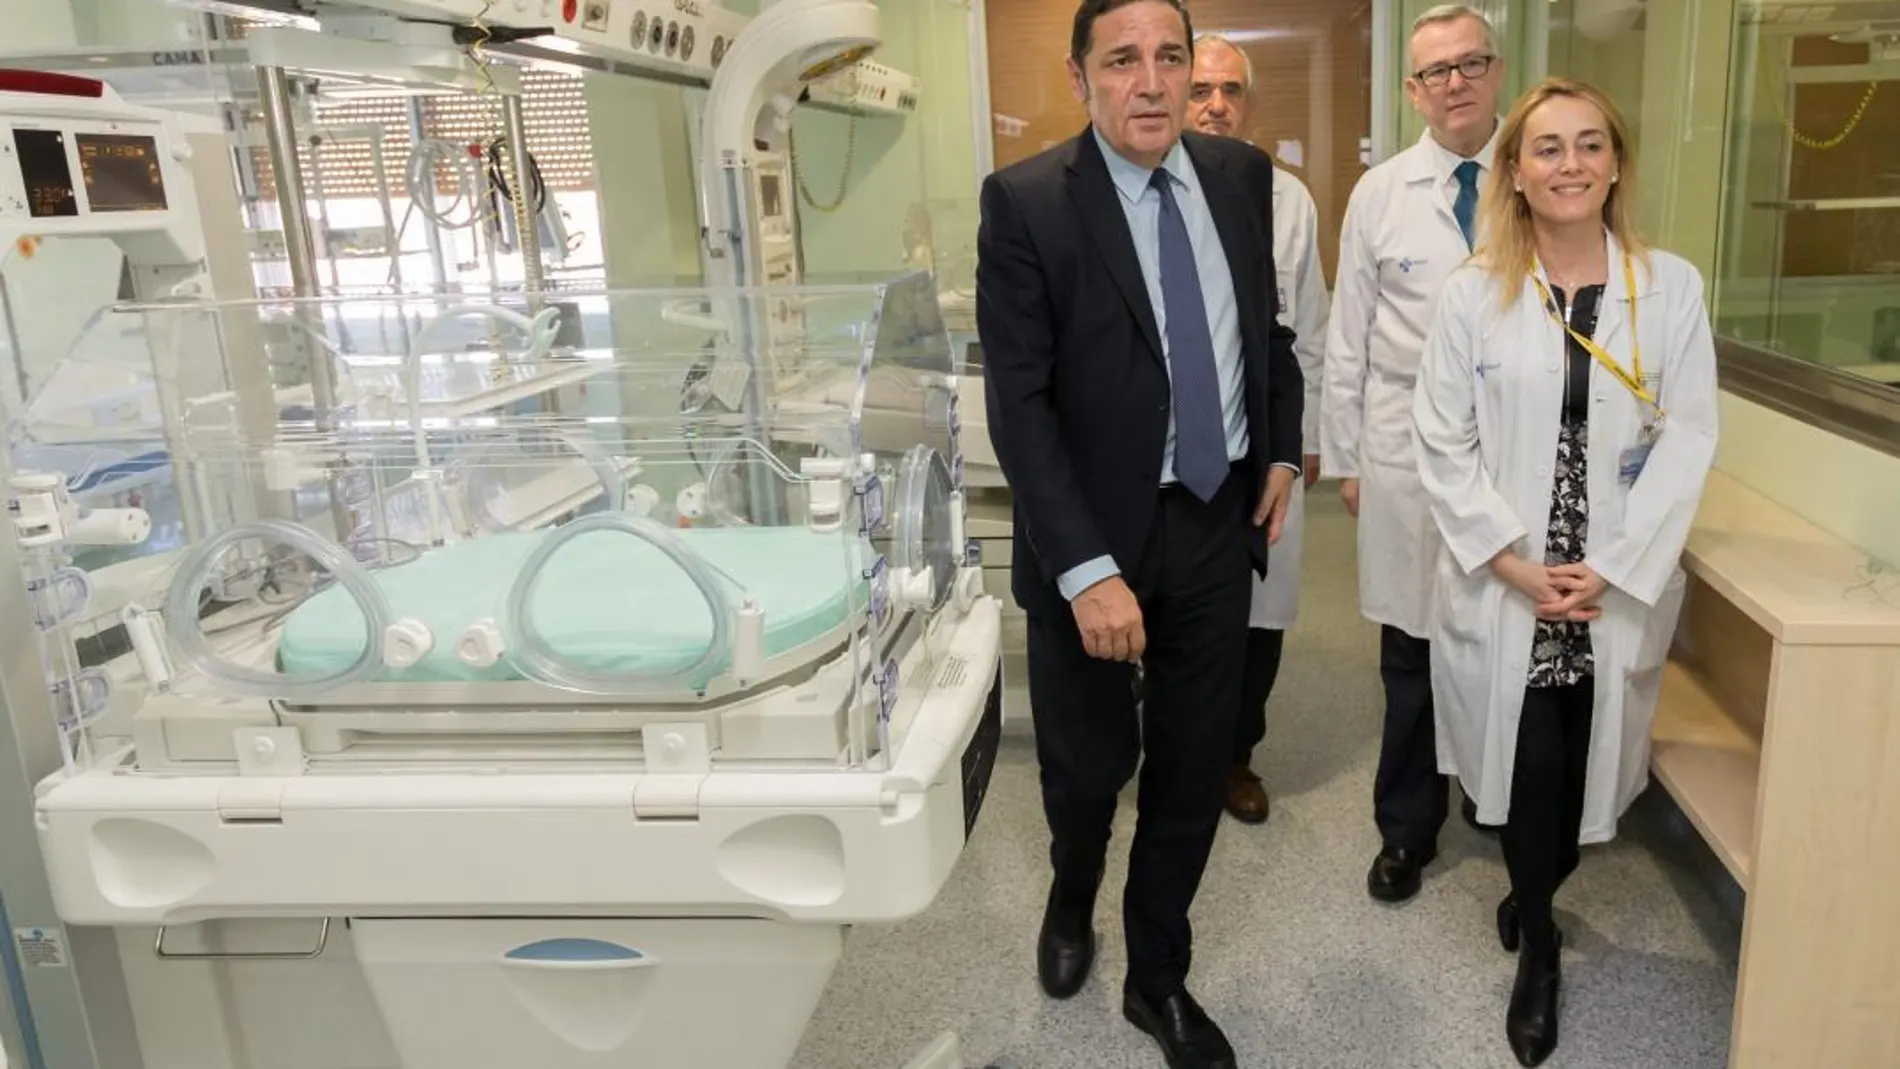 El consejero de Sanidad, Antonio María Sáez Aguado, visita la Unidad pediátrica del Hospital Clínico Universitario de Valladolid